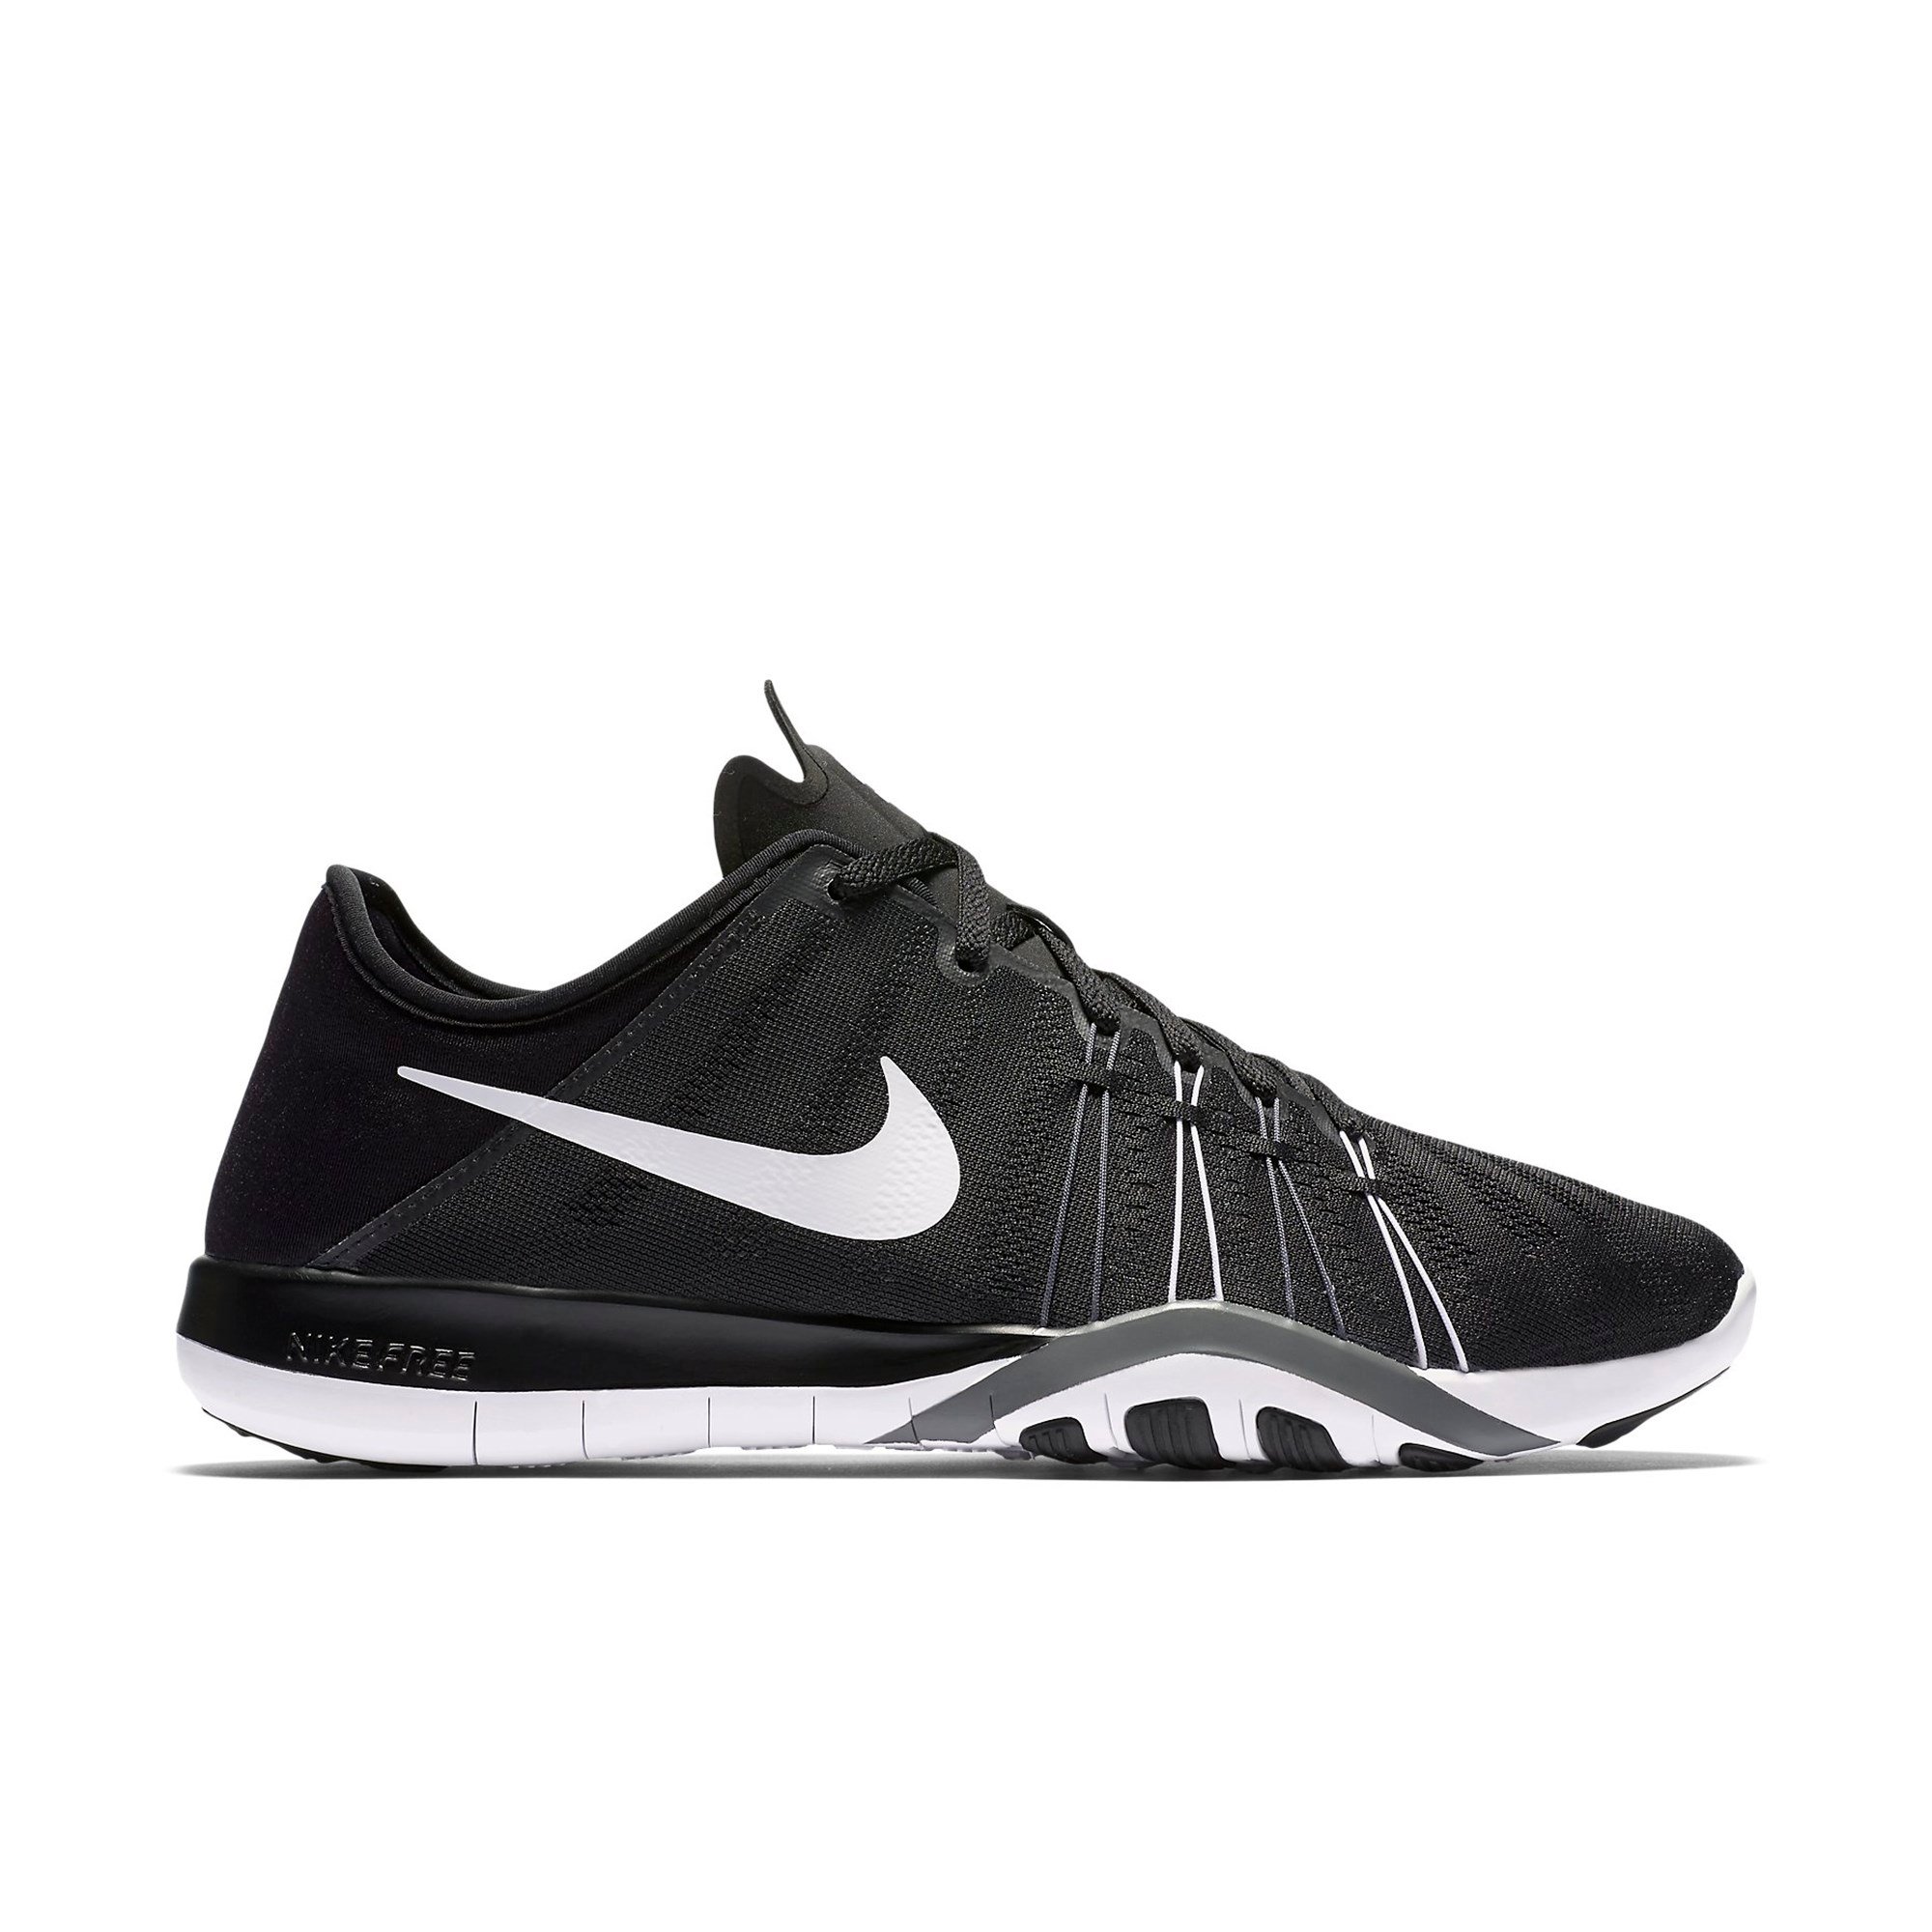 Nike Free TR 6 Bayan Spor Ayakkabı Ürün kodu: 833413-001 | Etichet Sport